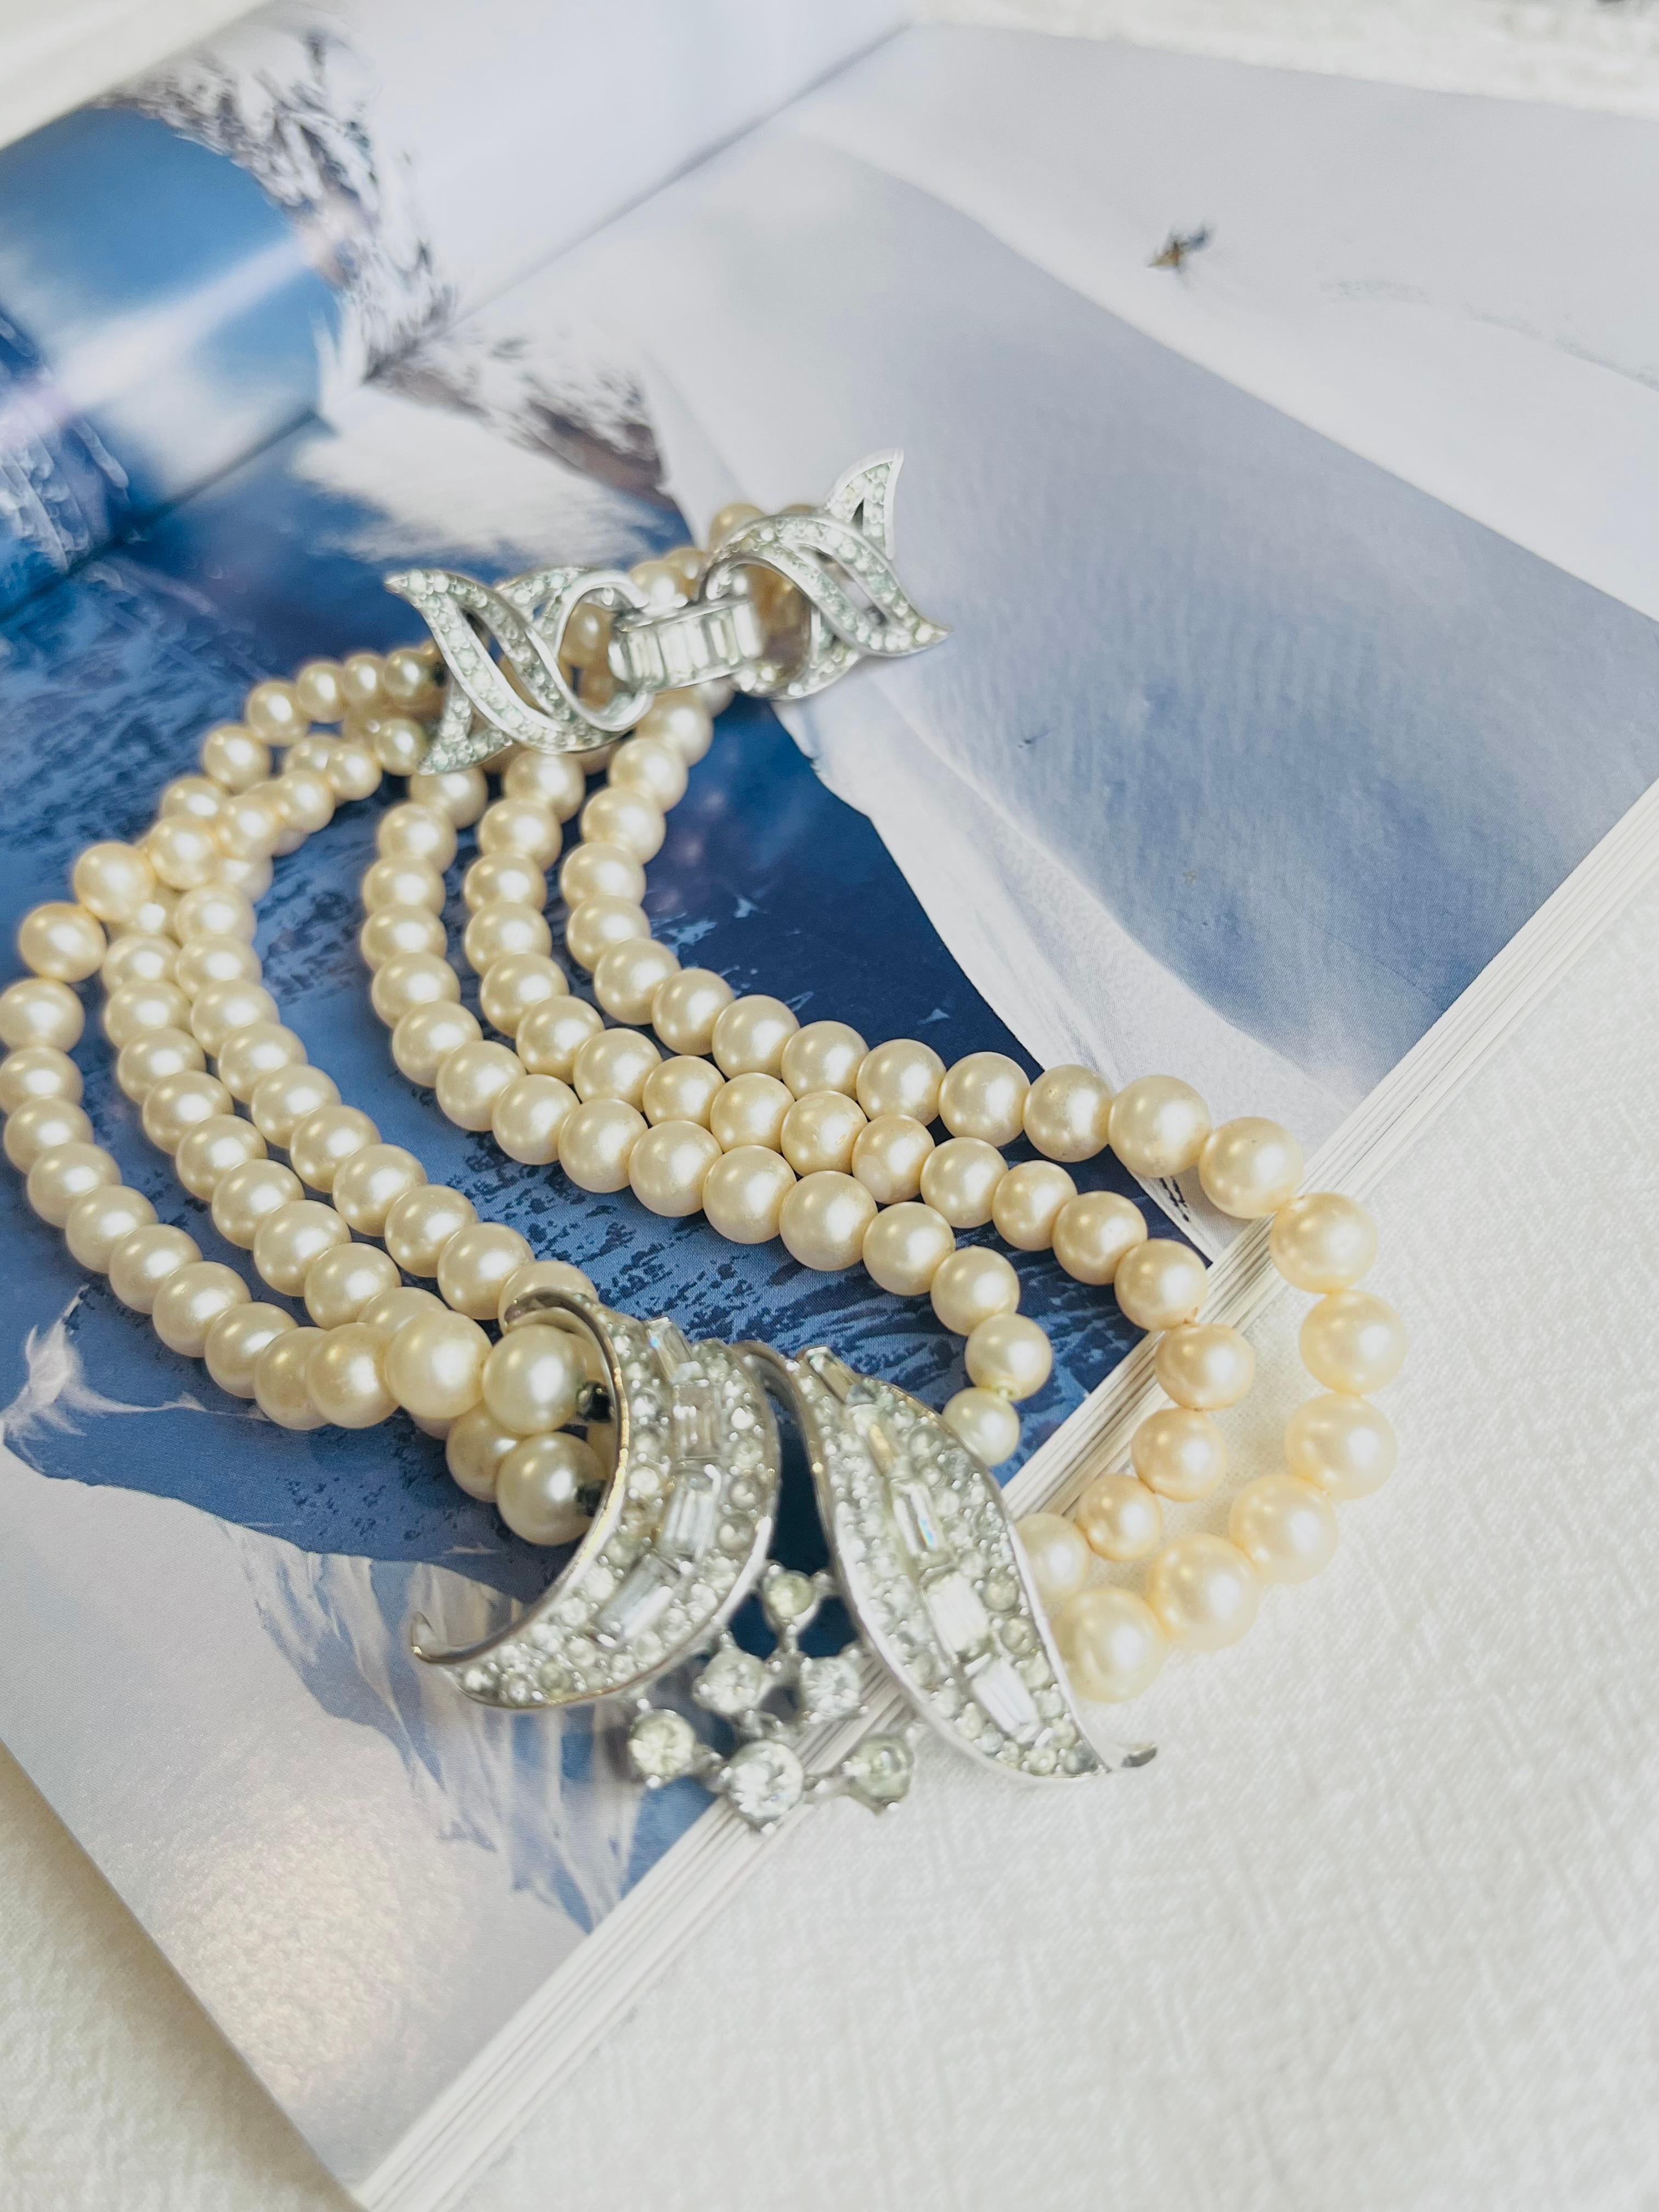 Crown Trifari 1940s Trio Stränge Schicht weiße Perlen Kristalle Anhänger Choker Halskette, Silber-Ton

Guter Zustand. Sehr leichte Kratzer oder Farbverluste. Selten zu finden. 100% echt. 

Eine sehr schöne Halskette, signiert auf der